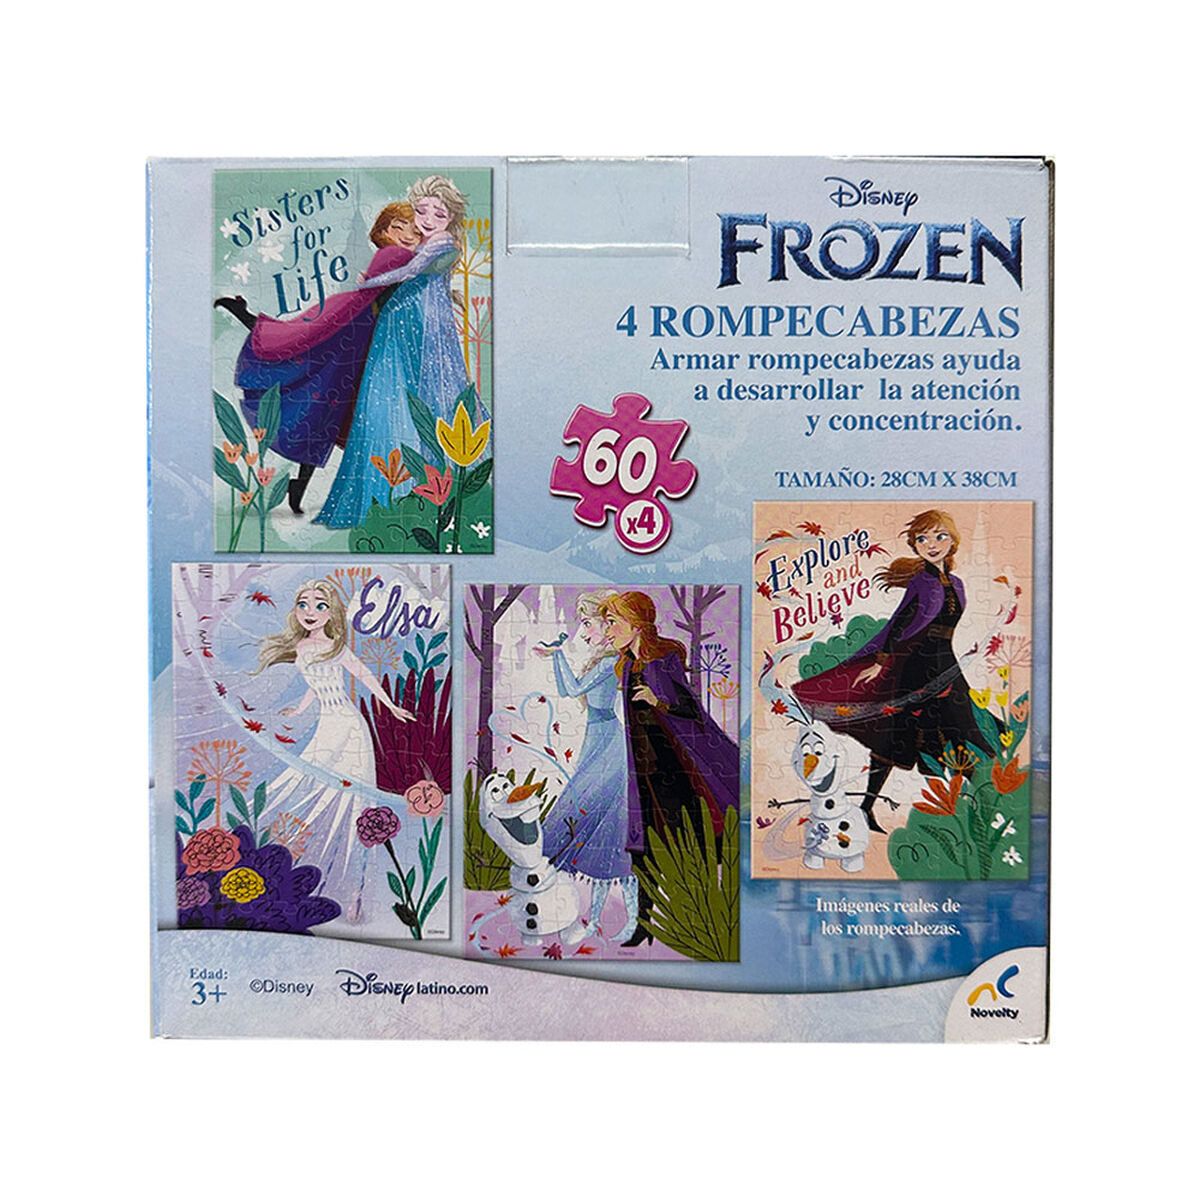 Puzzle 4 en 1 Frozen 60 Piezas Disney